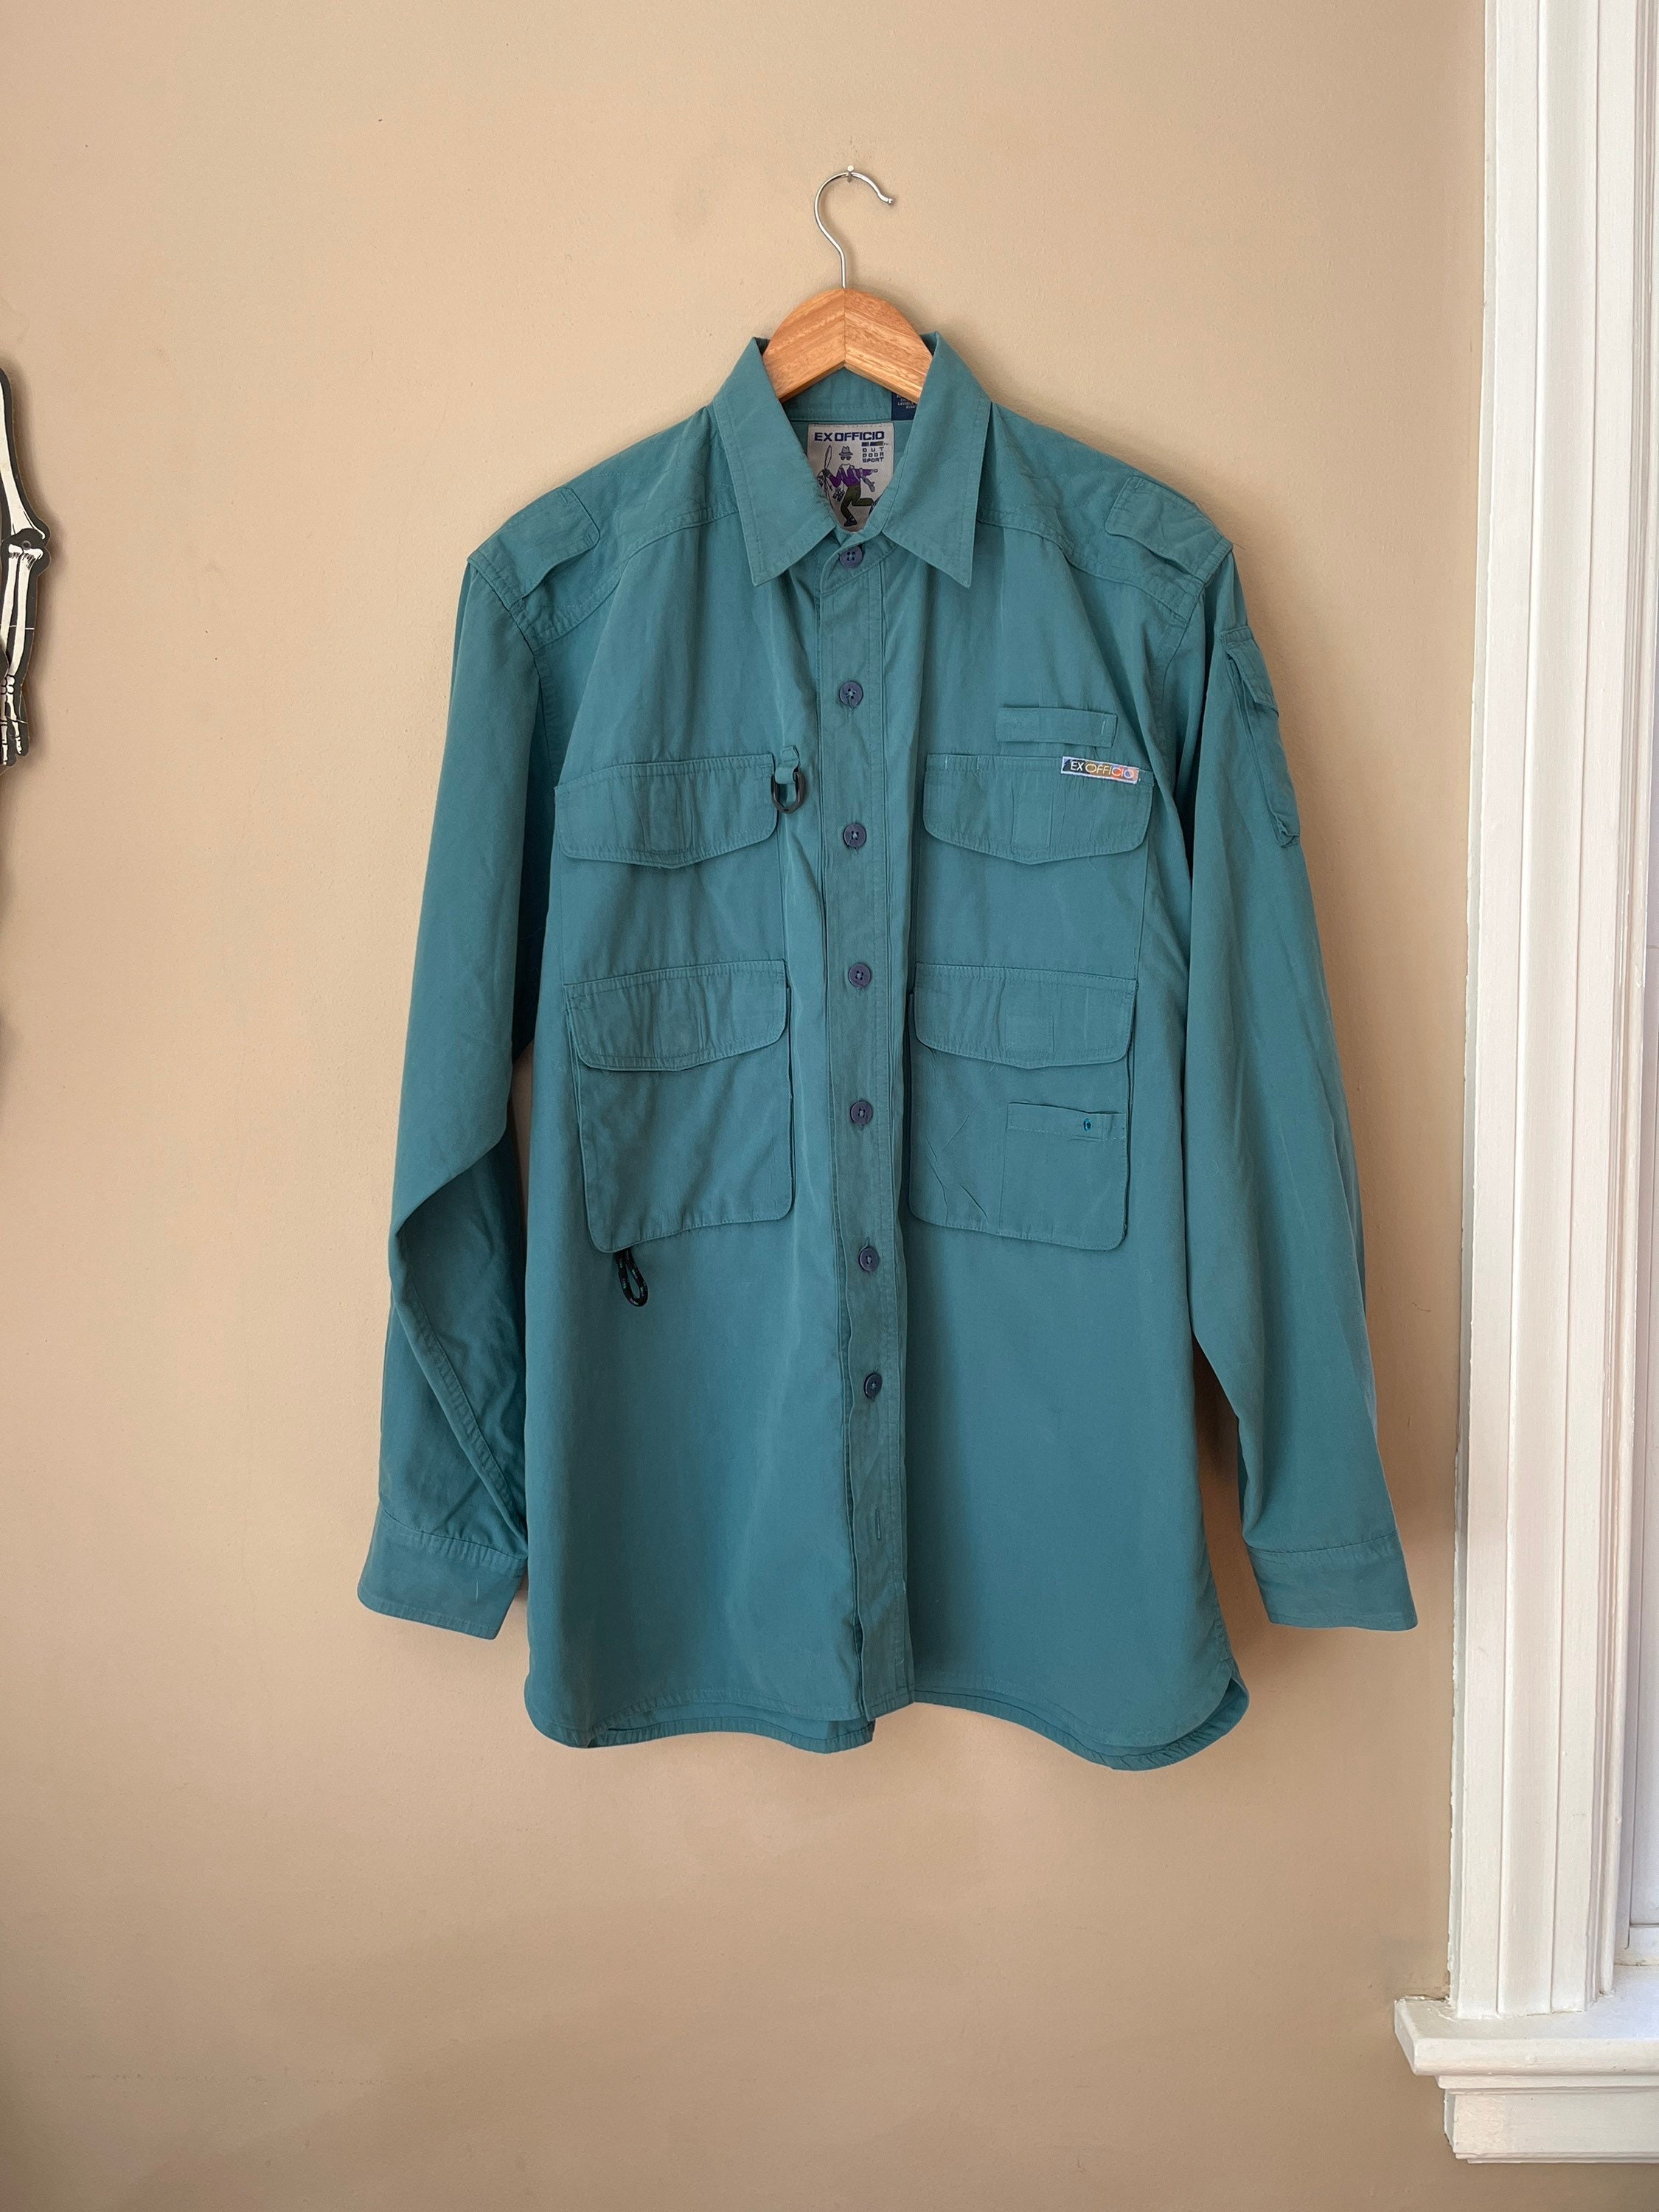 Men's Long Sleeve Hooded Fishing Jersey: Blue/Aqua - fishing shirt